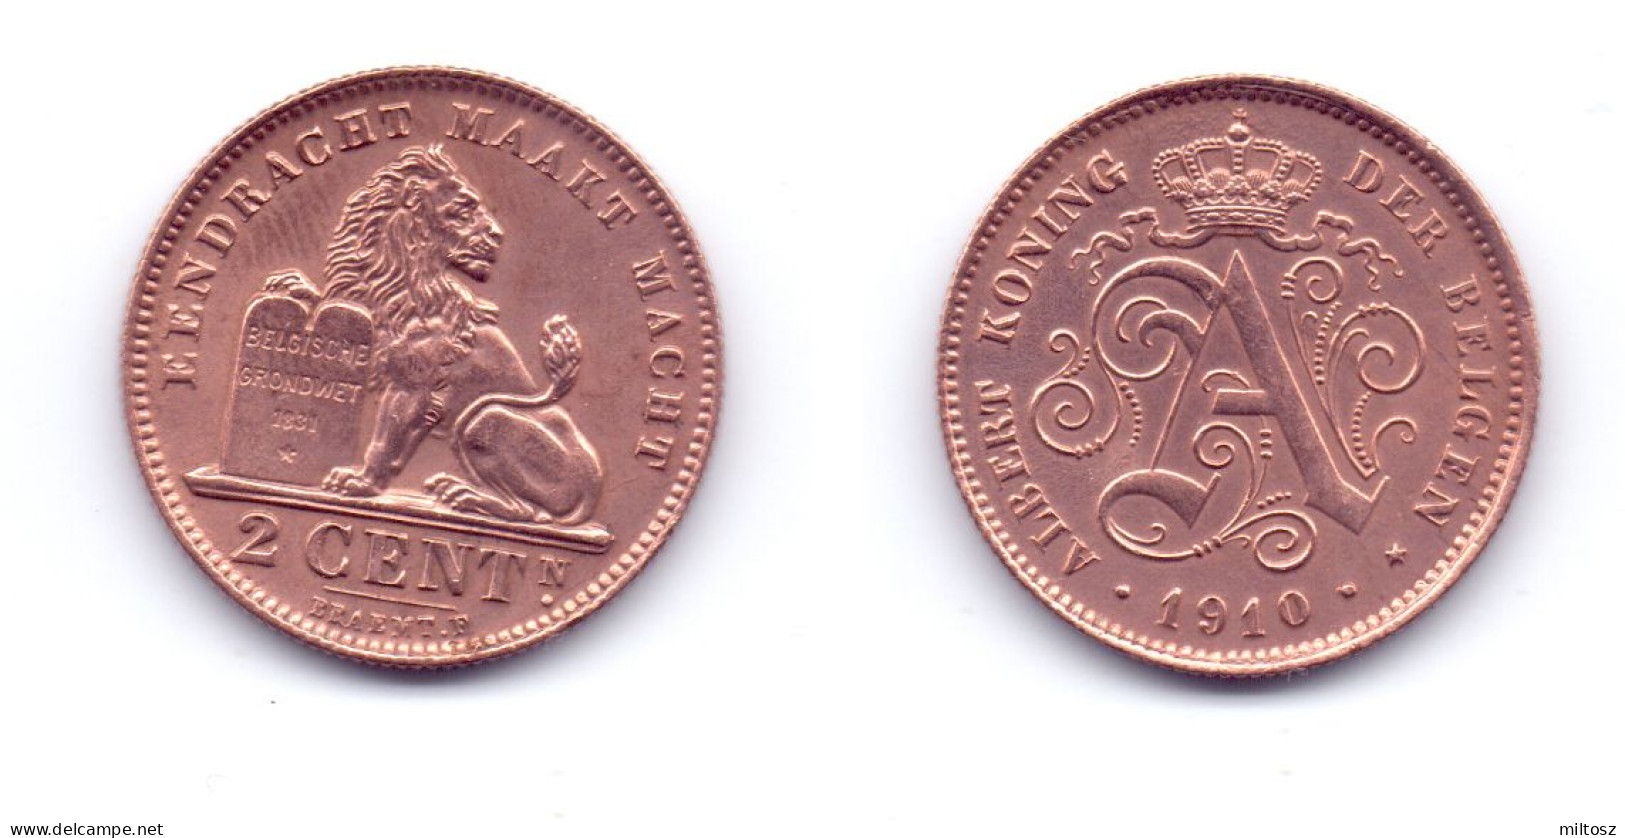 Belgium 2 Centimes 1910 (Dutch Legend) - 2 Cent